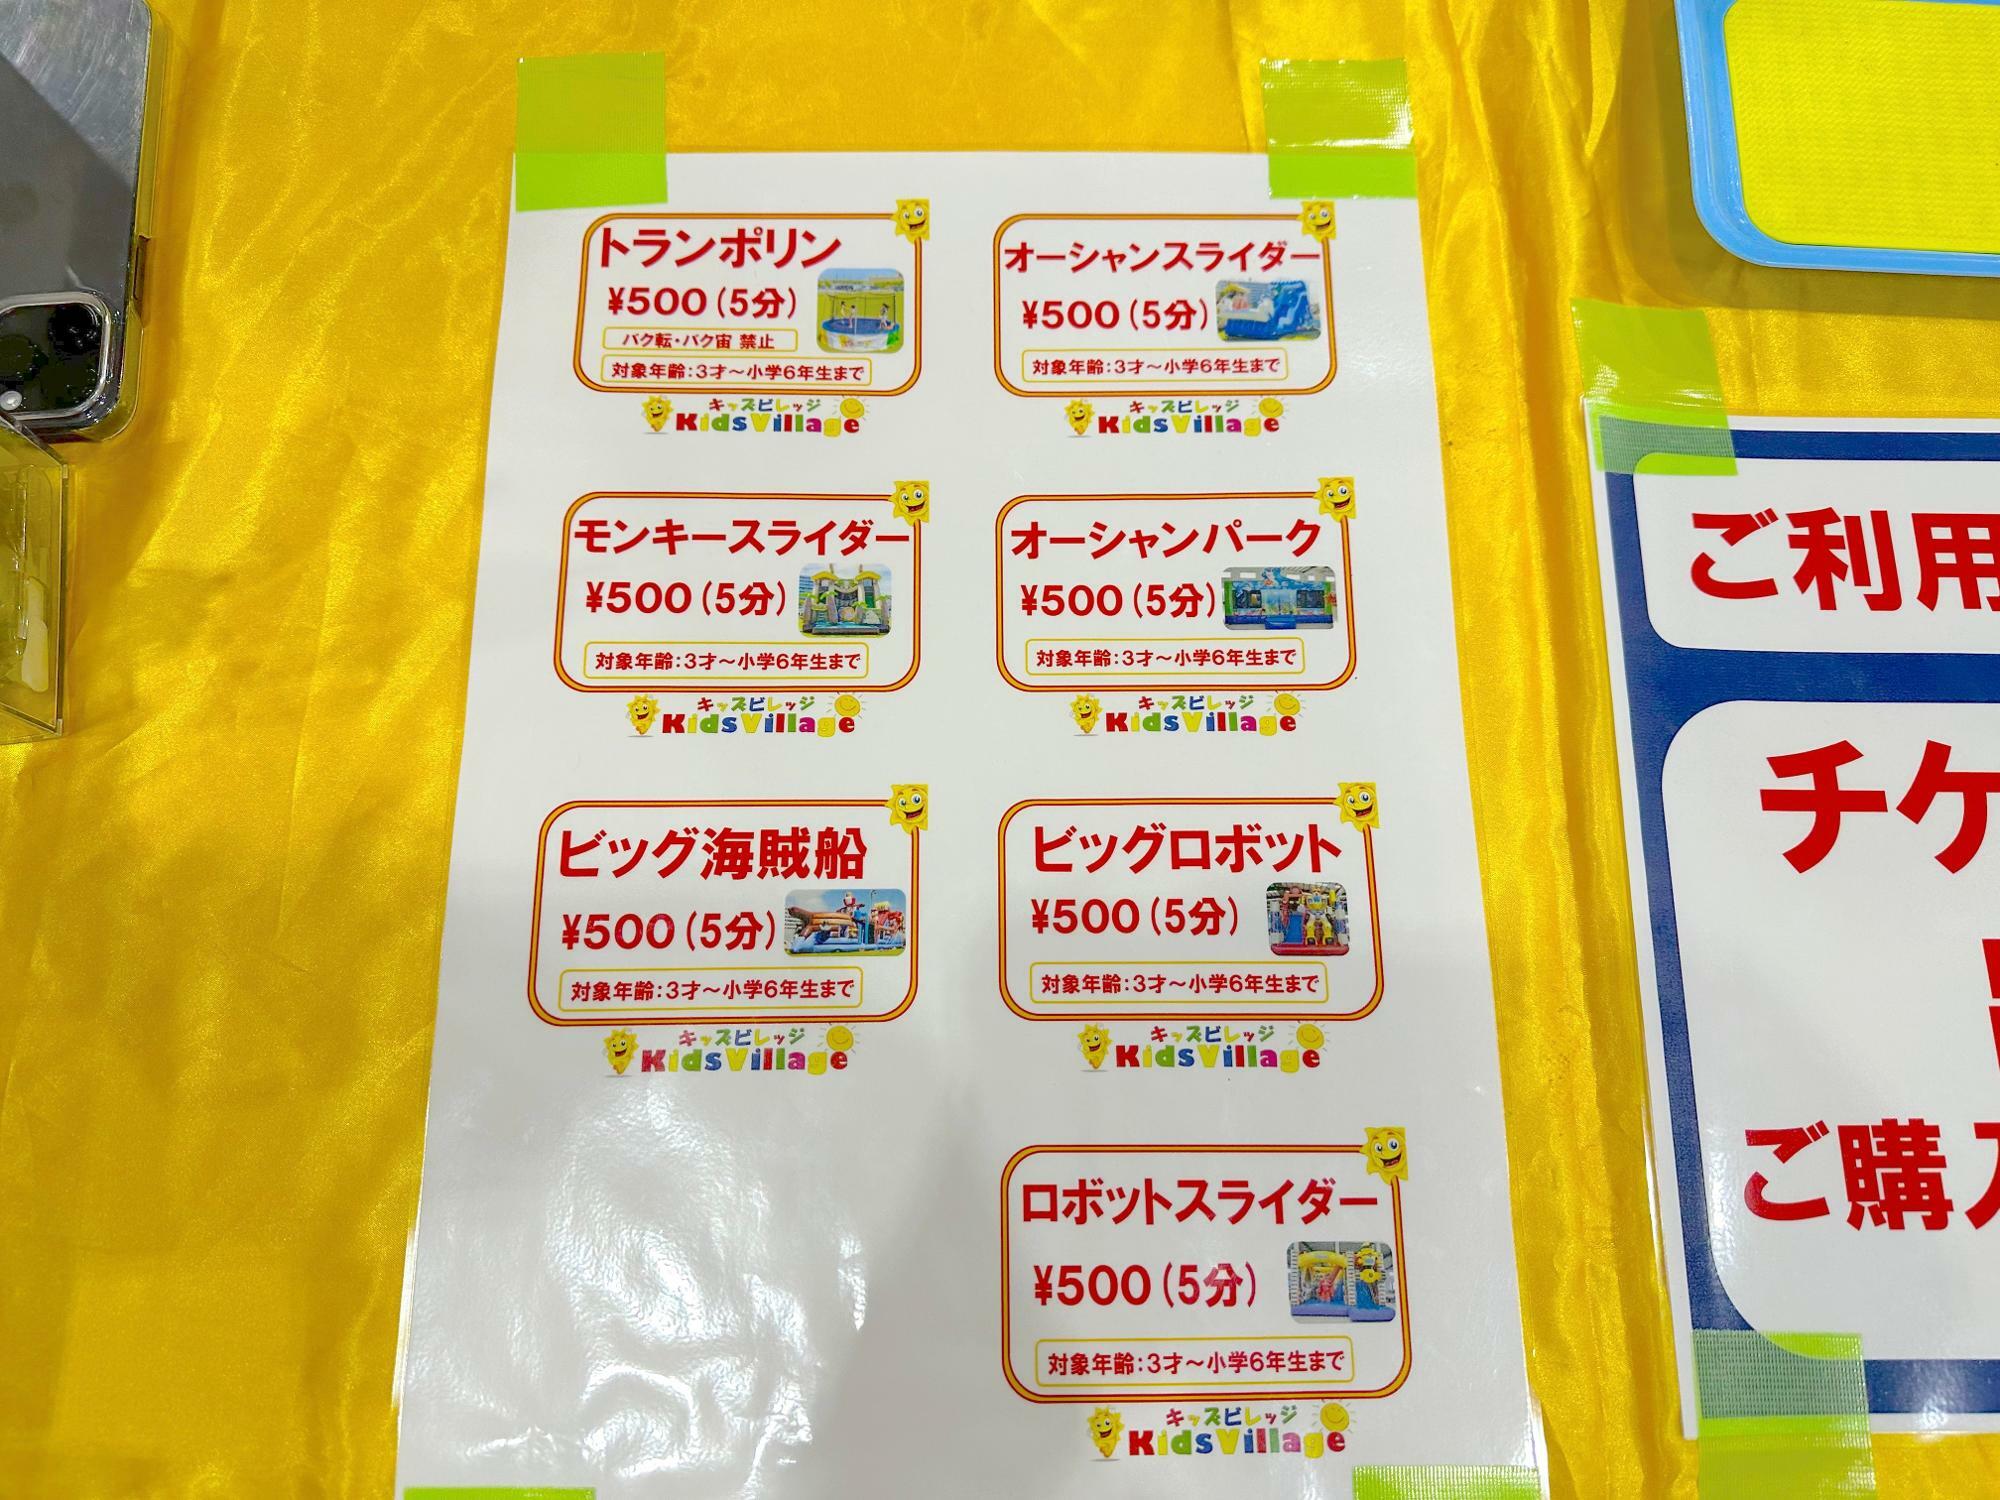 最近のふわふわエアー遊具の相場は500円/分。。